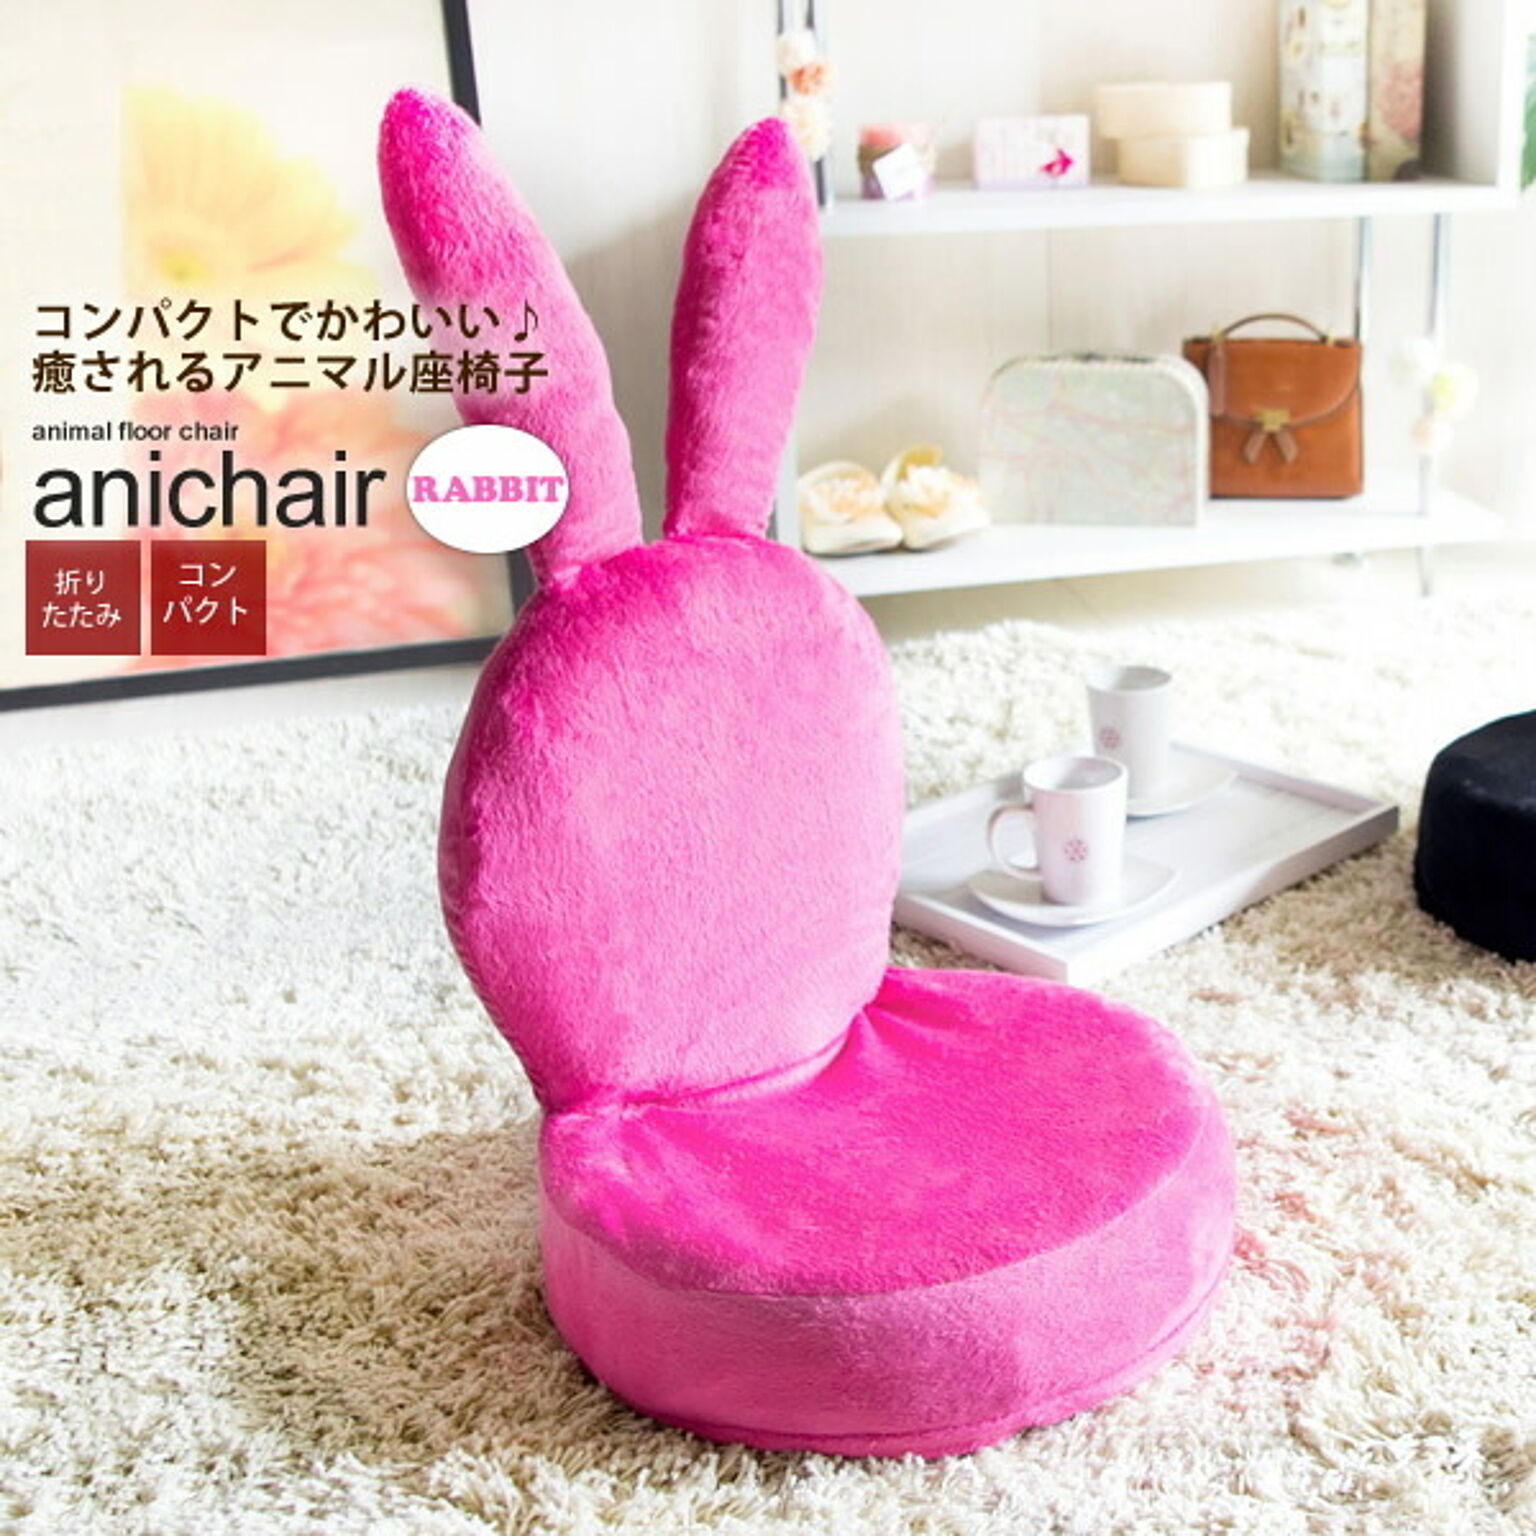 座椅子 フロアチェアー 折りたたみ アニマル どうぶつ ： ウサギ【anichair】 ピンク(pink) ラビット うさぎ ウサギ いす イス コンパクト 